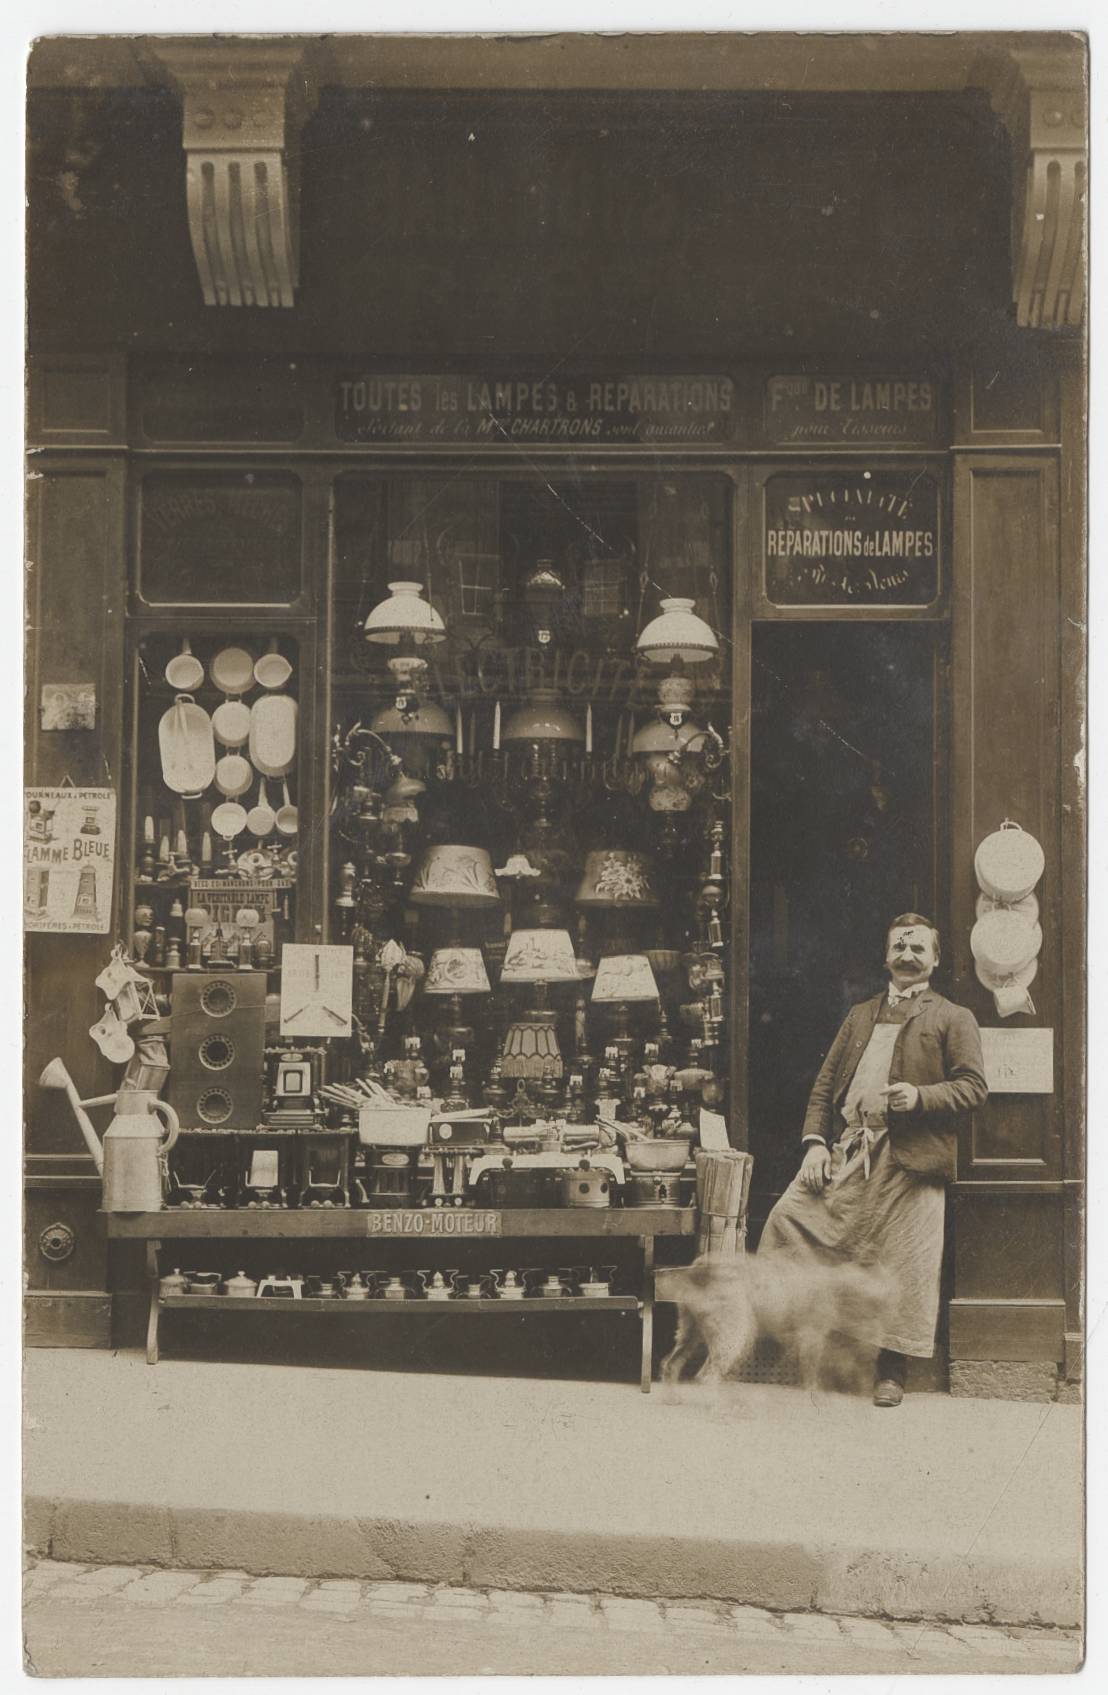 Devanture d'un magasin de lampes (sans légende) : carte postale NB (vers 1910, cote : 4FI/4152)